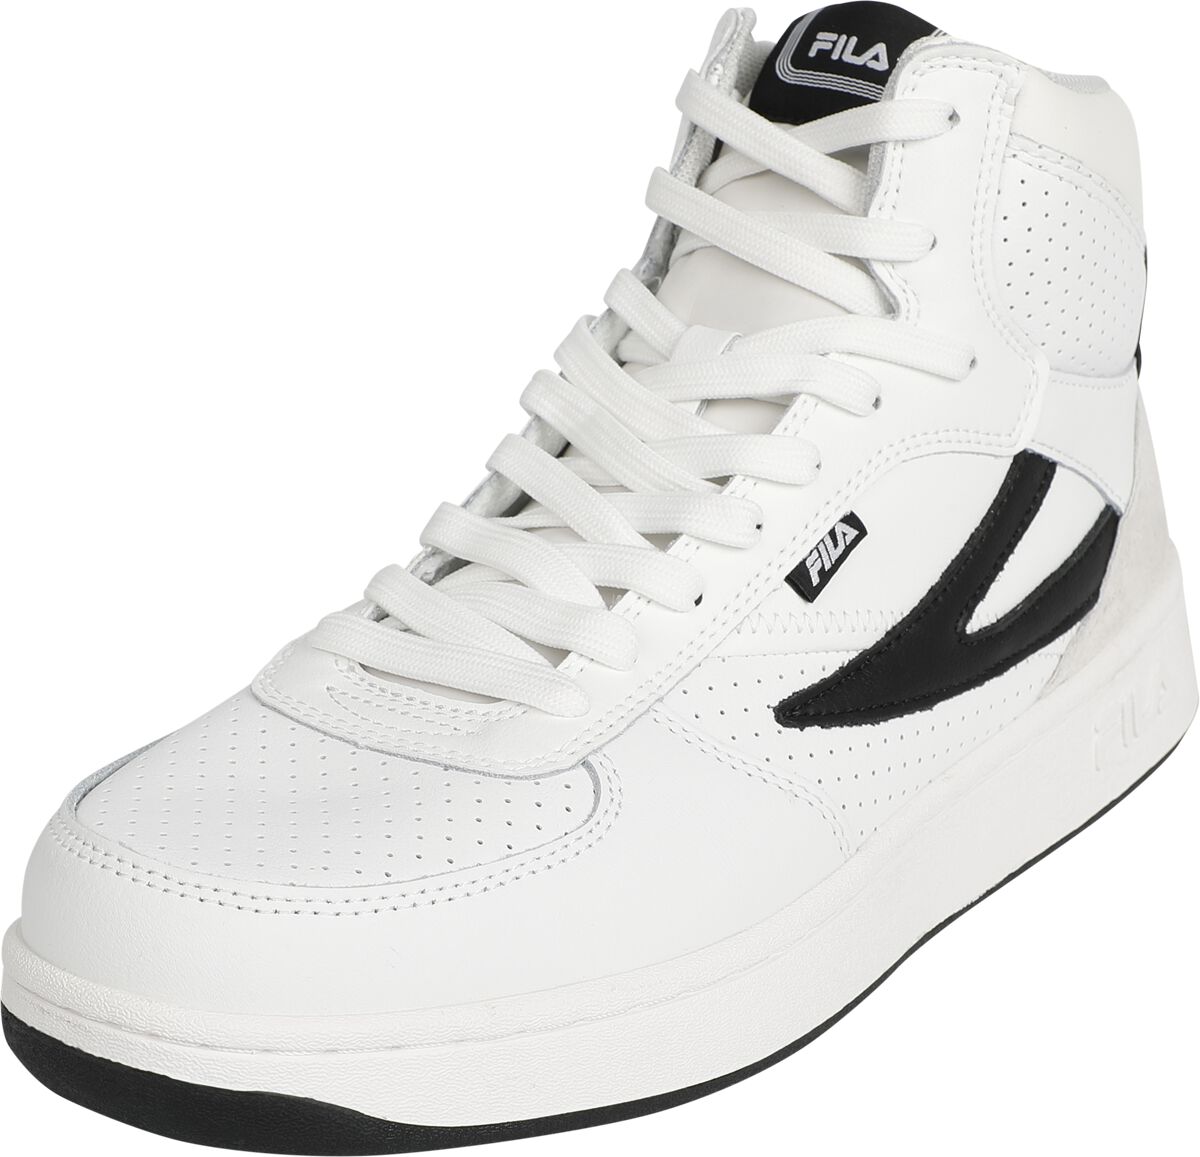 Fila FILA SEVARO mid Sneaker high weiß schwarz in EU41